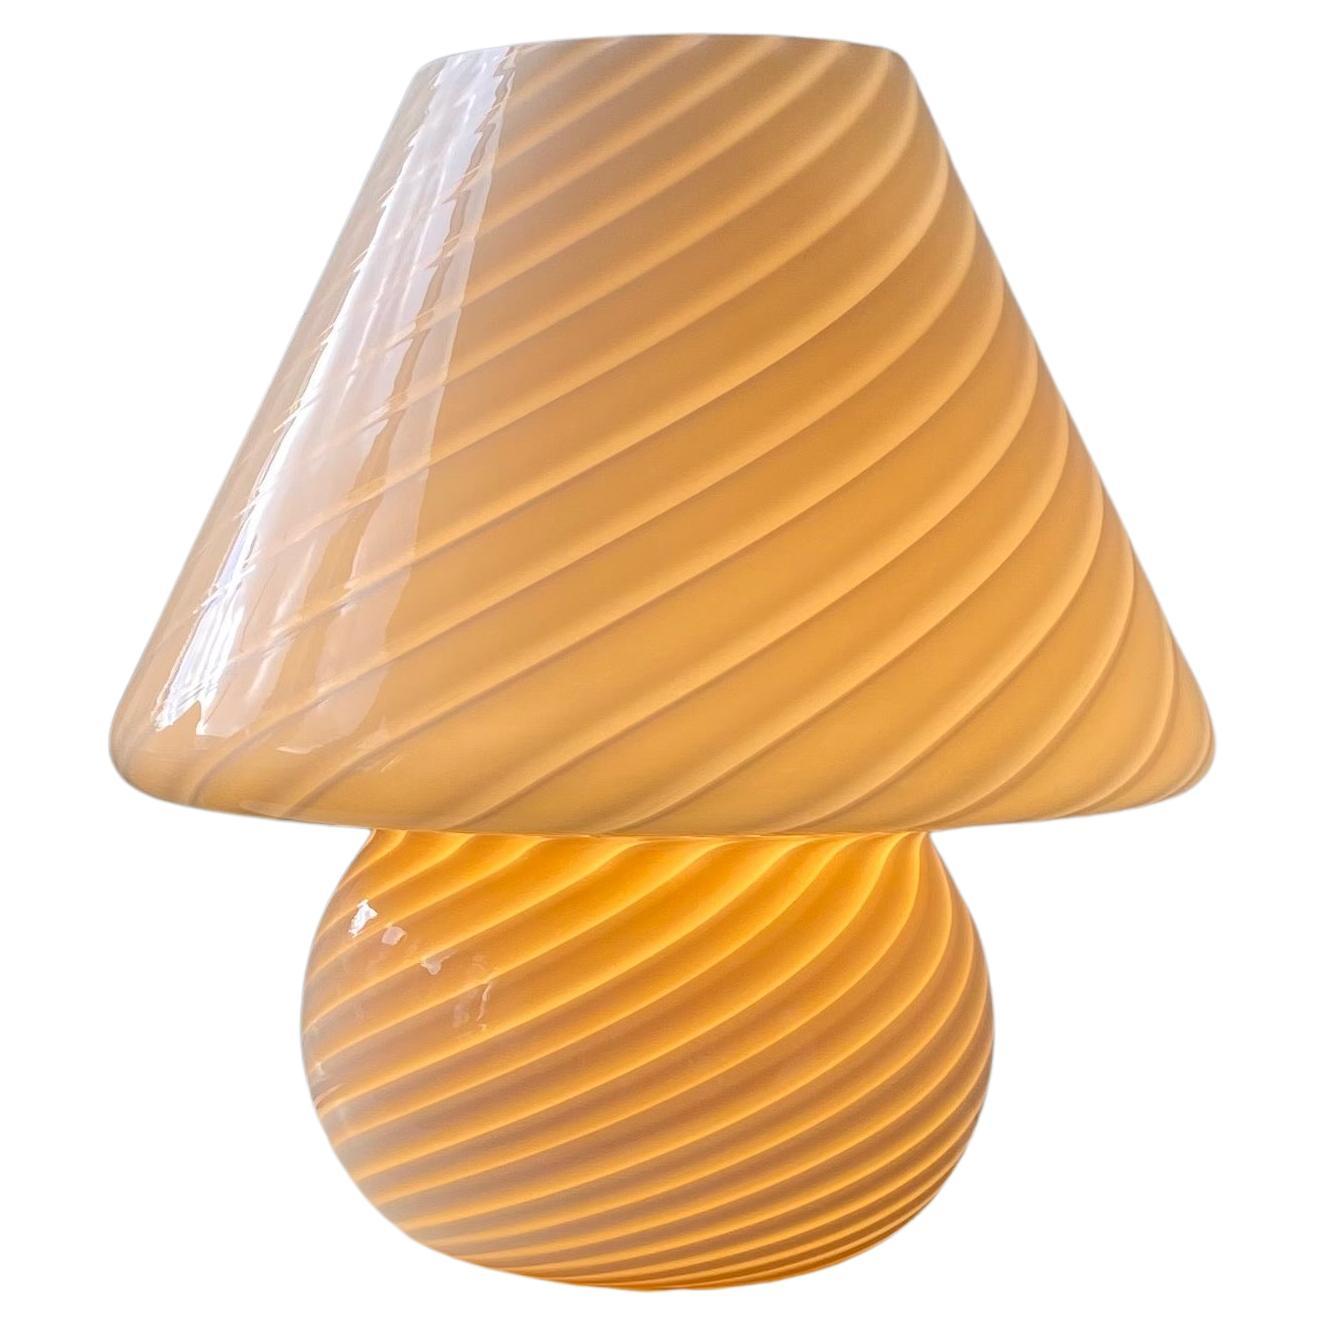 Extra large lampe de bureau vintage de Murano en verre champignon jaune crème tourbillonnant